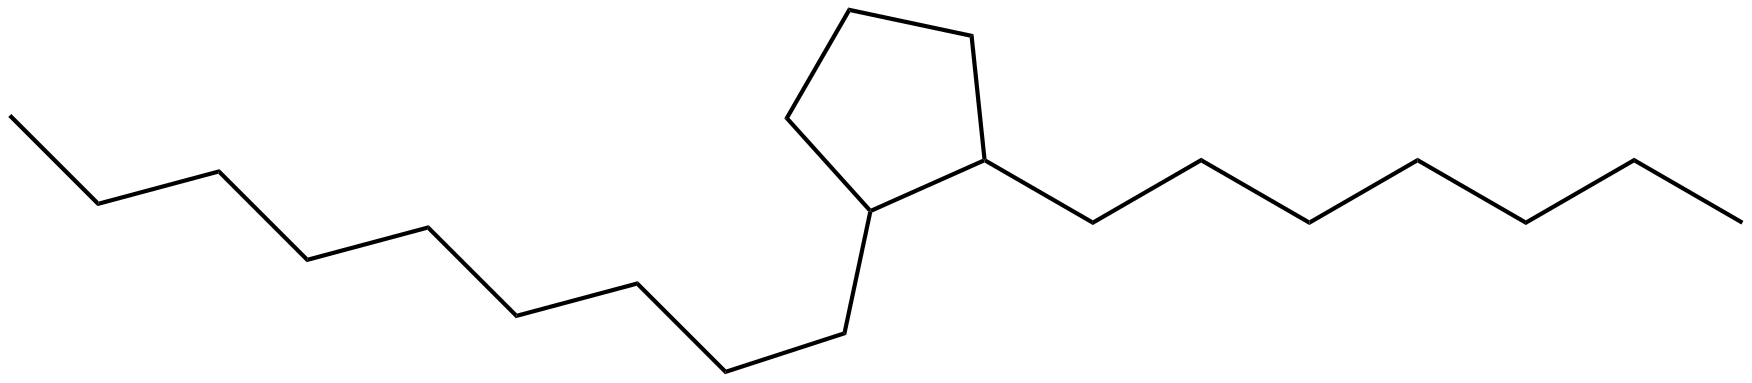 Image of 1-heptyl-2-nonylcyclopentane